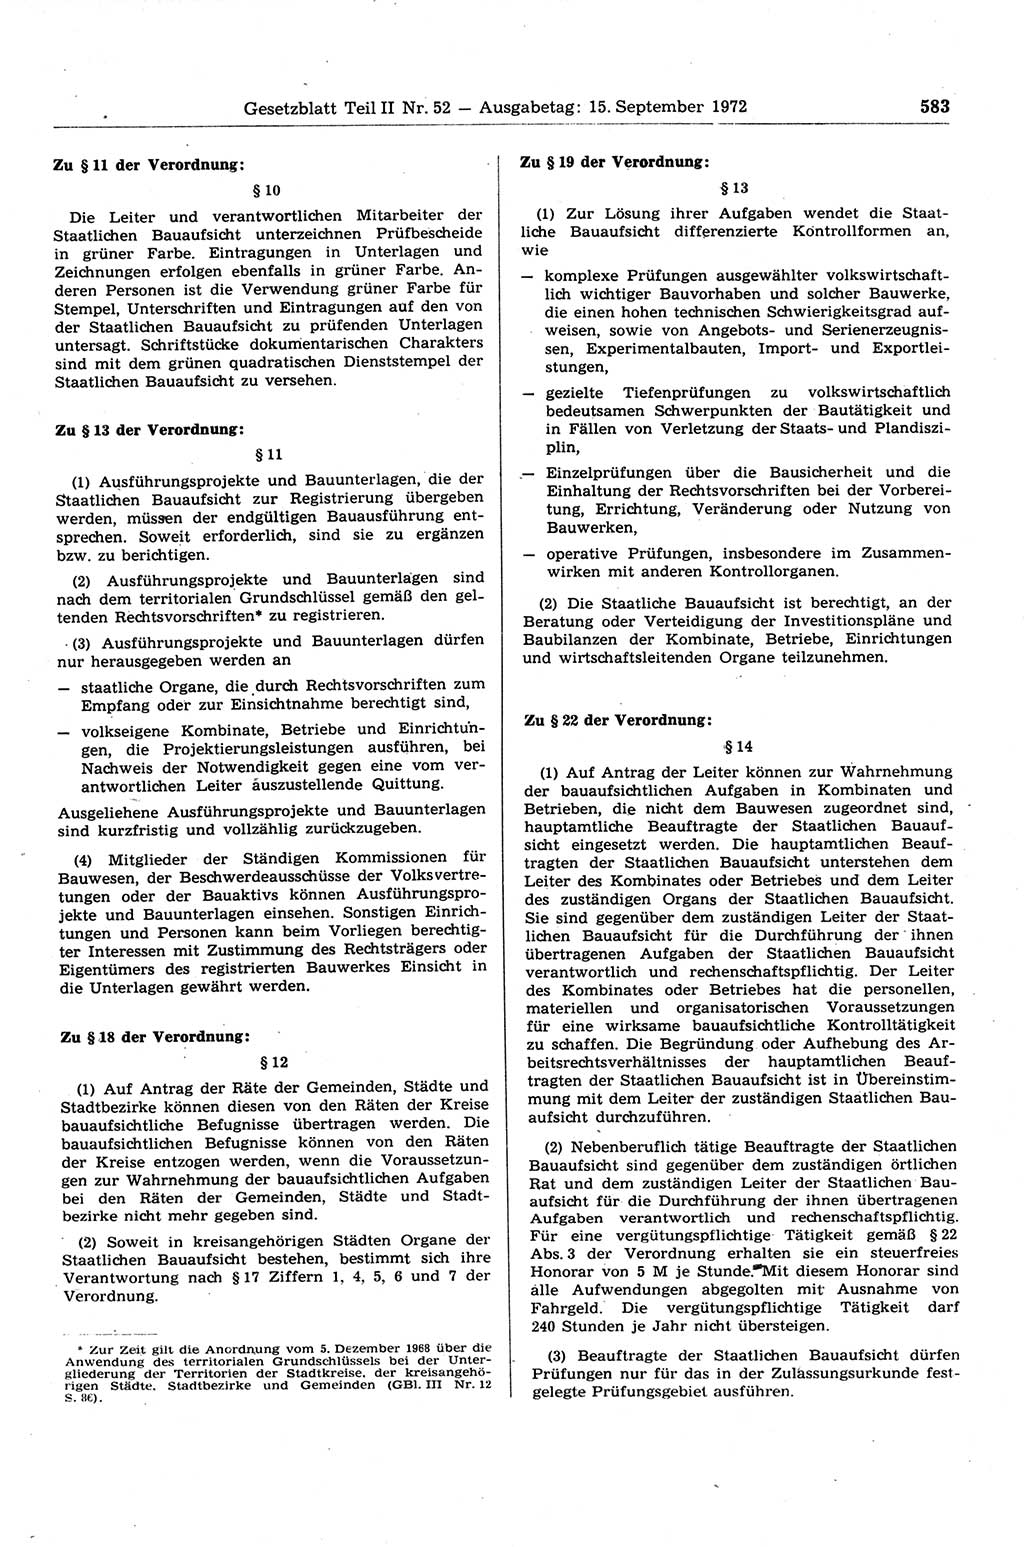 Gesetzblatt (GBl.) der Deutschen Demokratischen Republik (DDR) Teil ⅠⅠ 1972, Seite 583 (GBl. DDR ⅠⅠ 1972, S. 583)